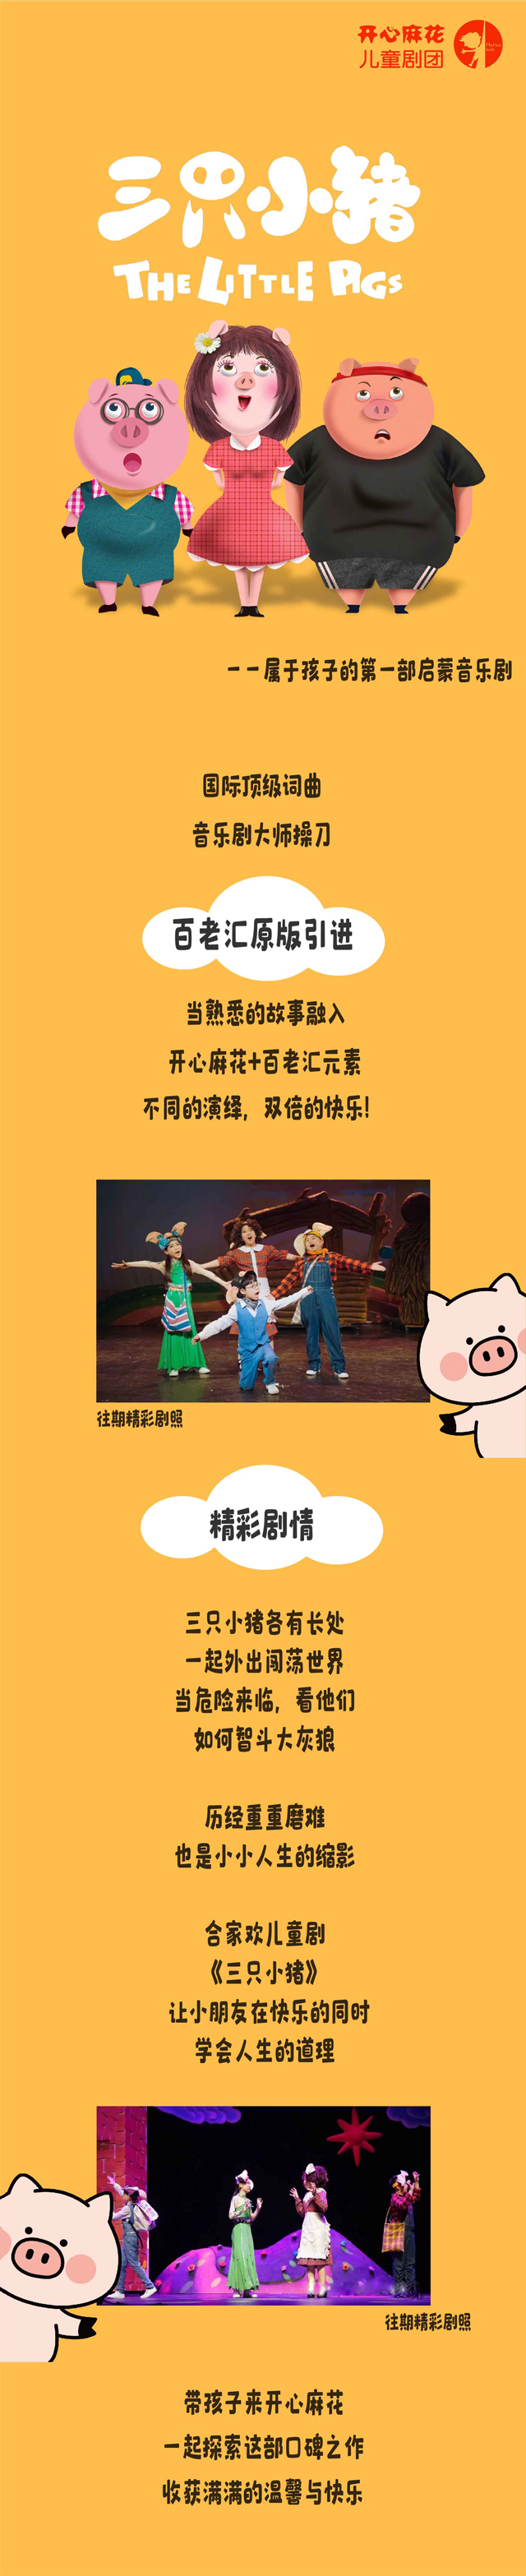 【上海站】开心麻花儿童剧团合家欢音乐剧《三只小猪》